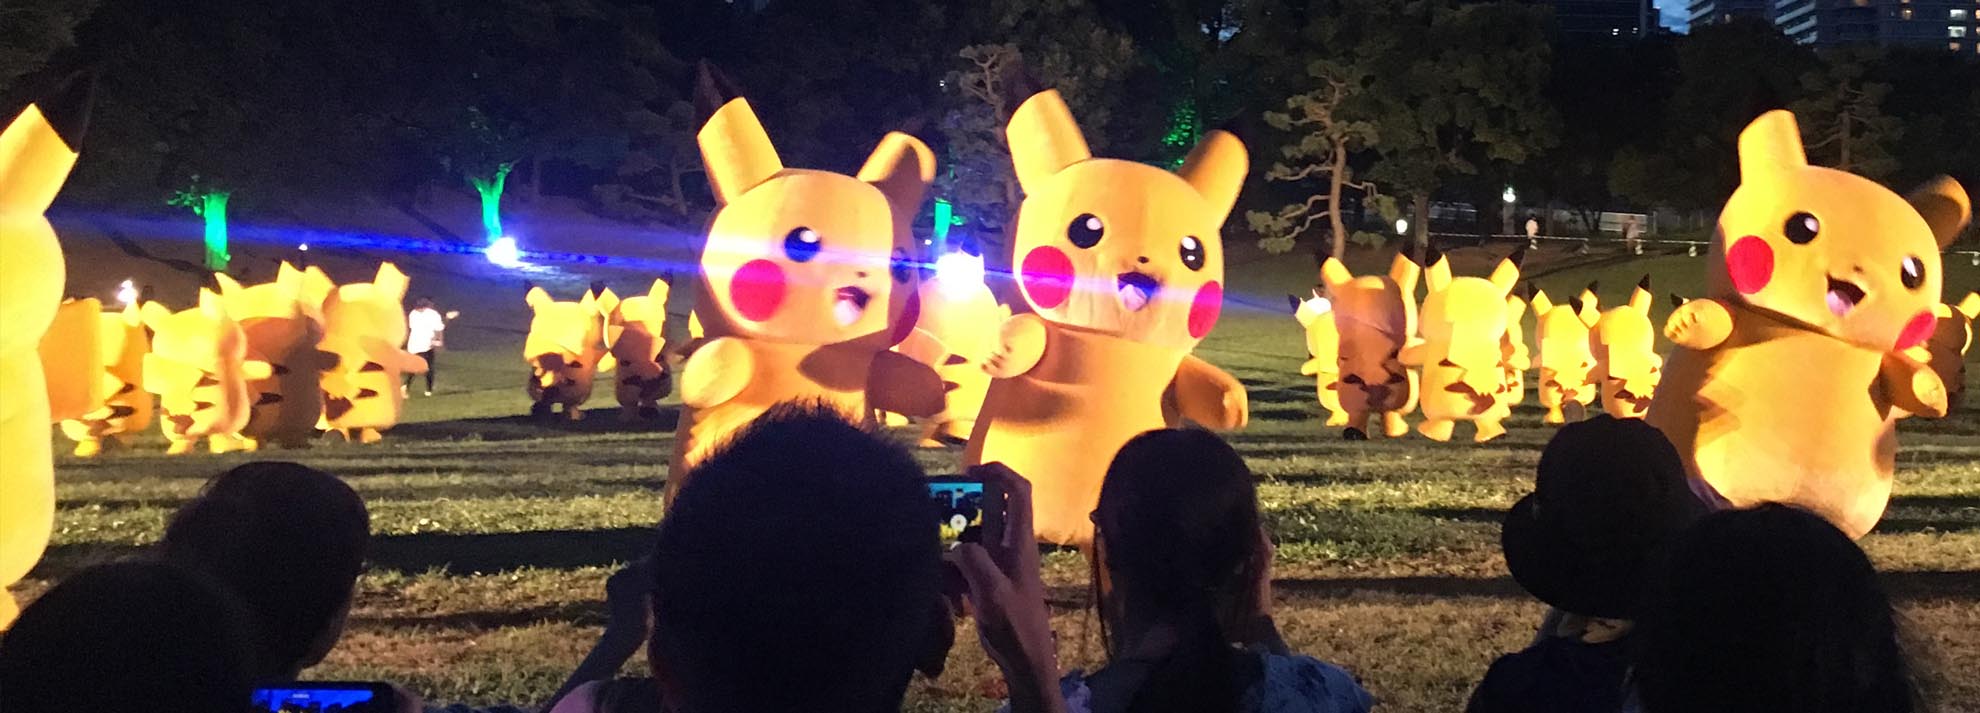 Asi Fue El Pikachu Outbreak La Mayor Horda De Pikachus Del Mundo